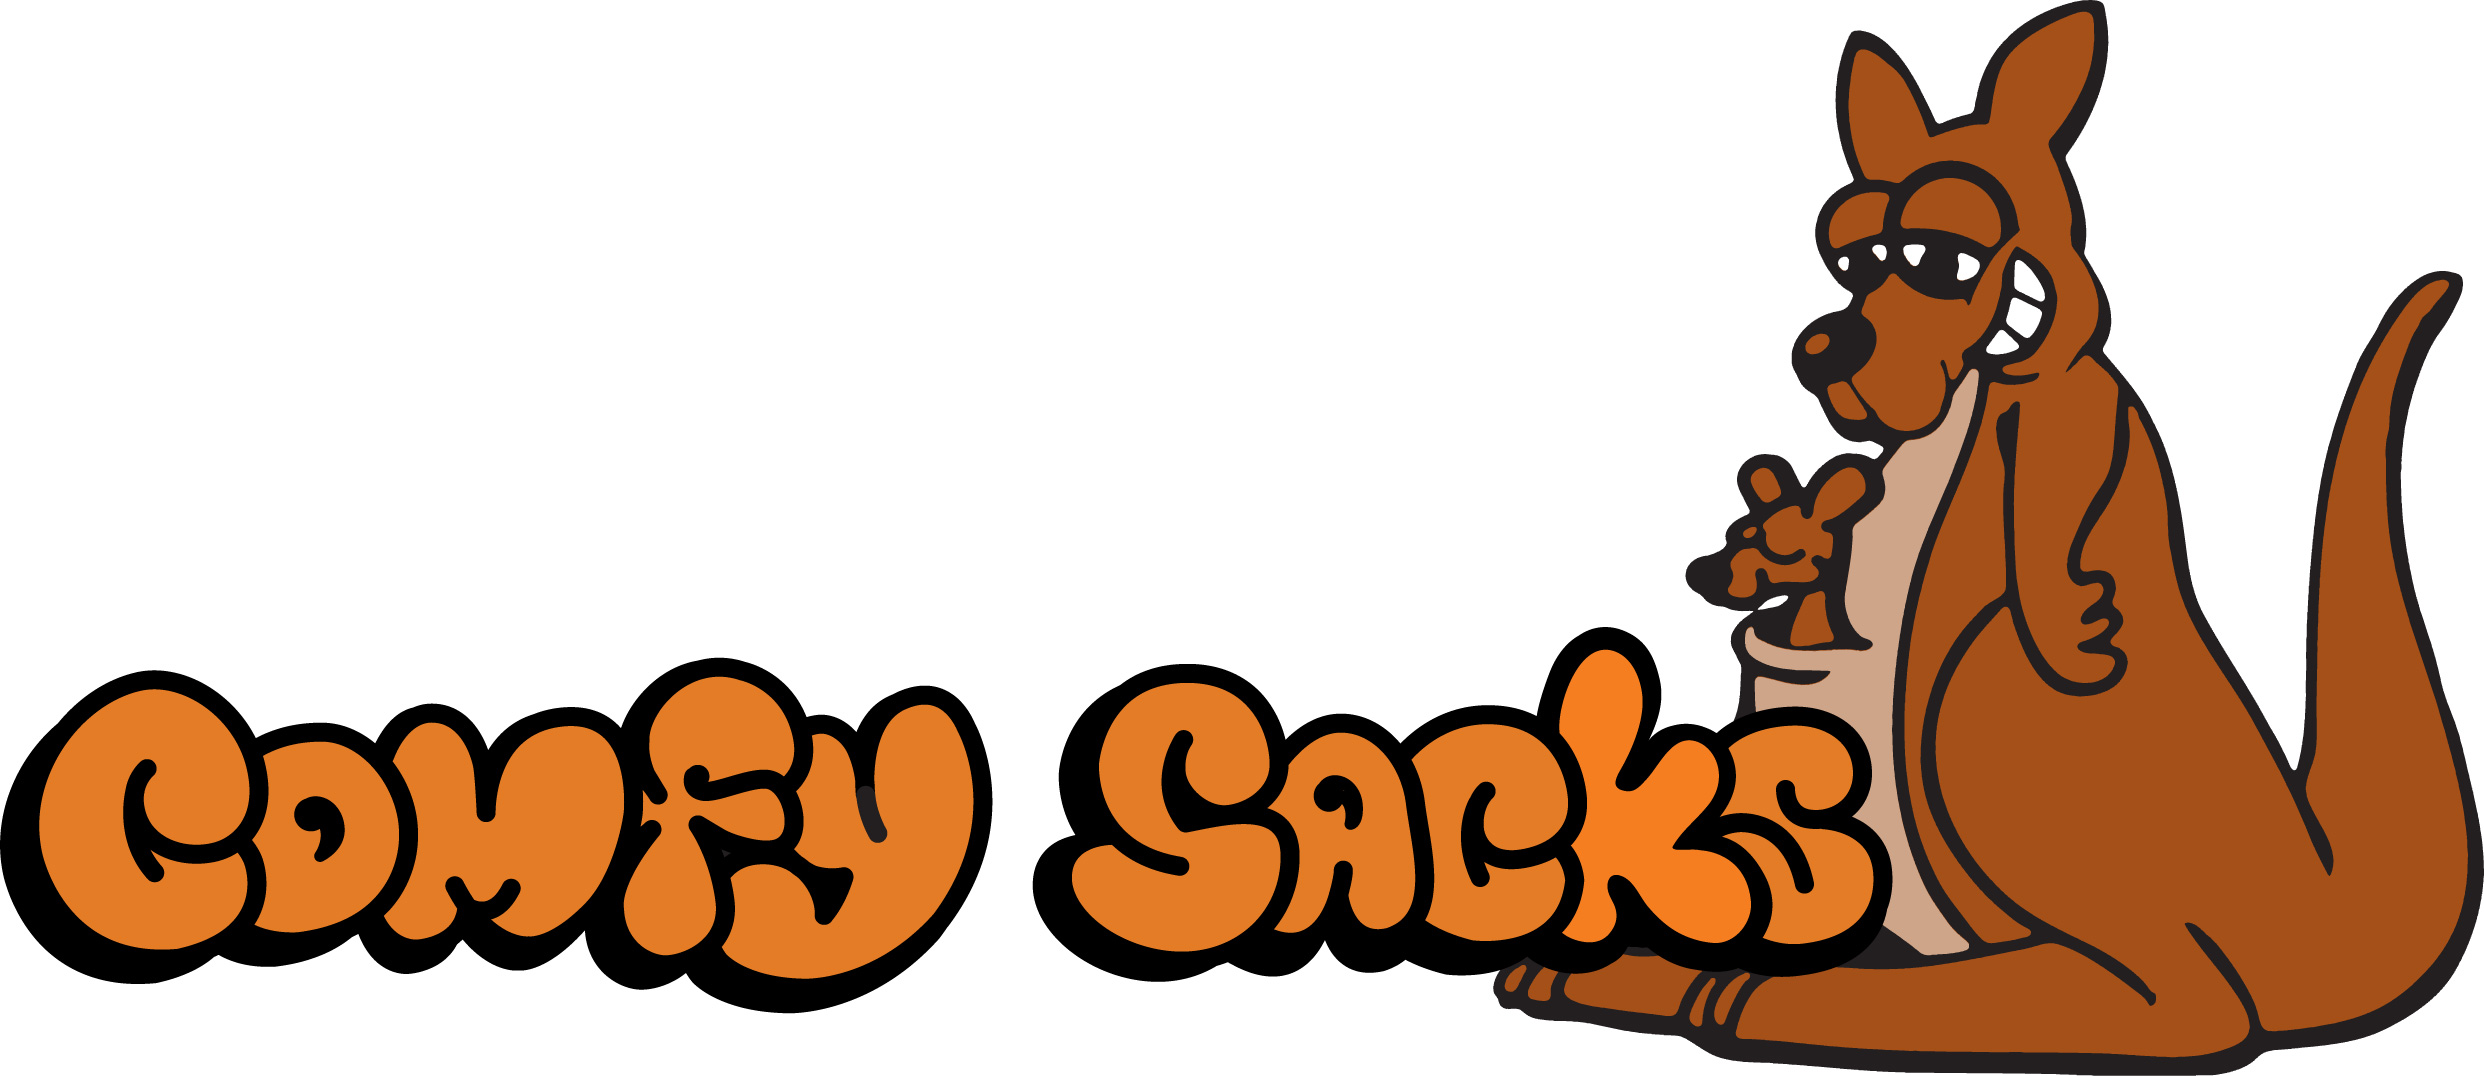 comfy sacks logo